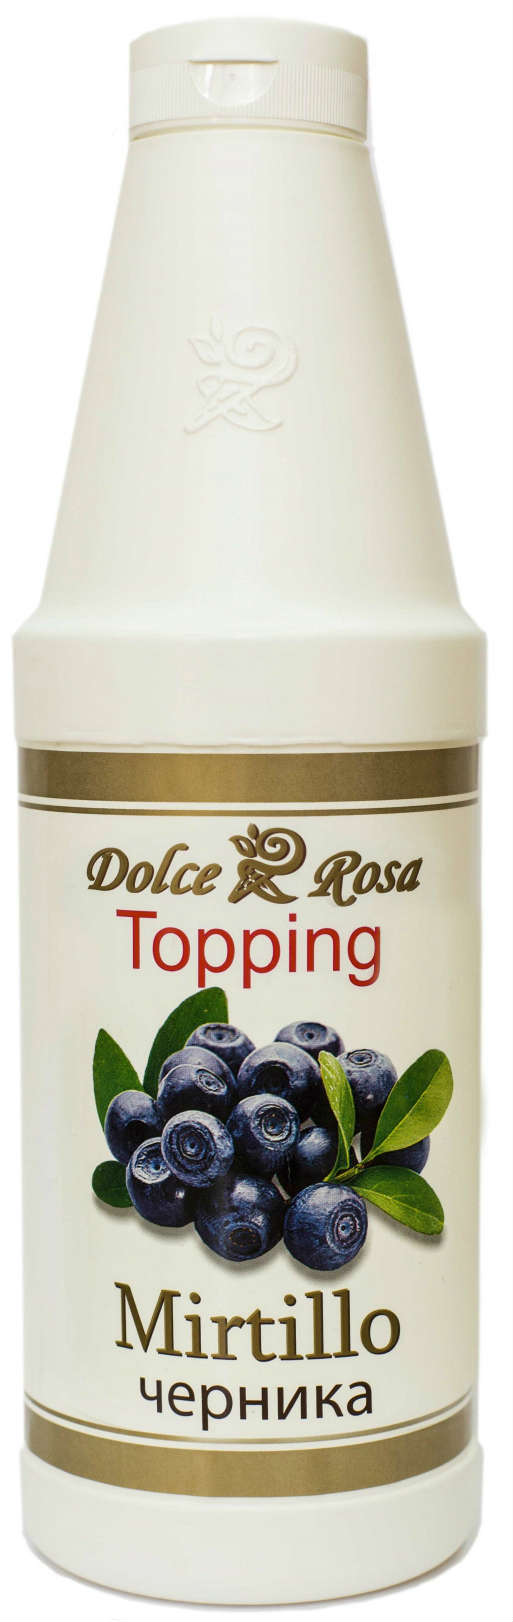 Топпинг Dolce Rosa черника, 1 л.